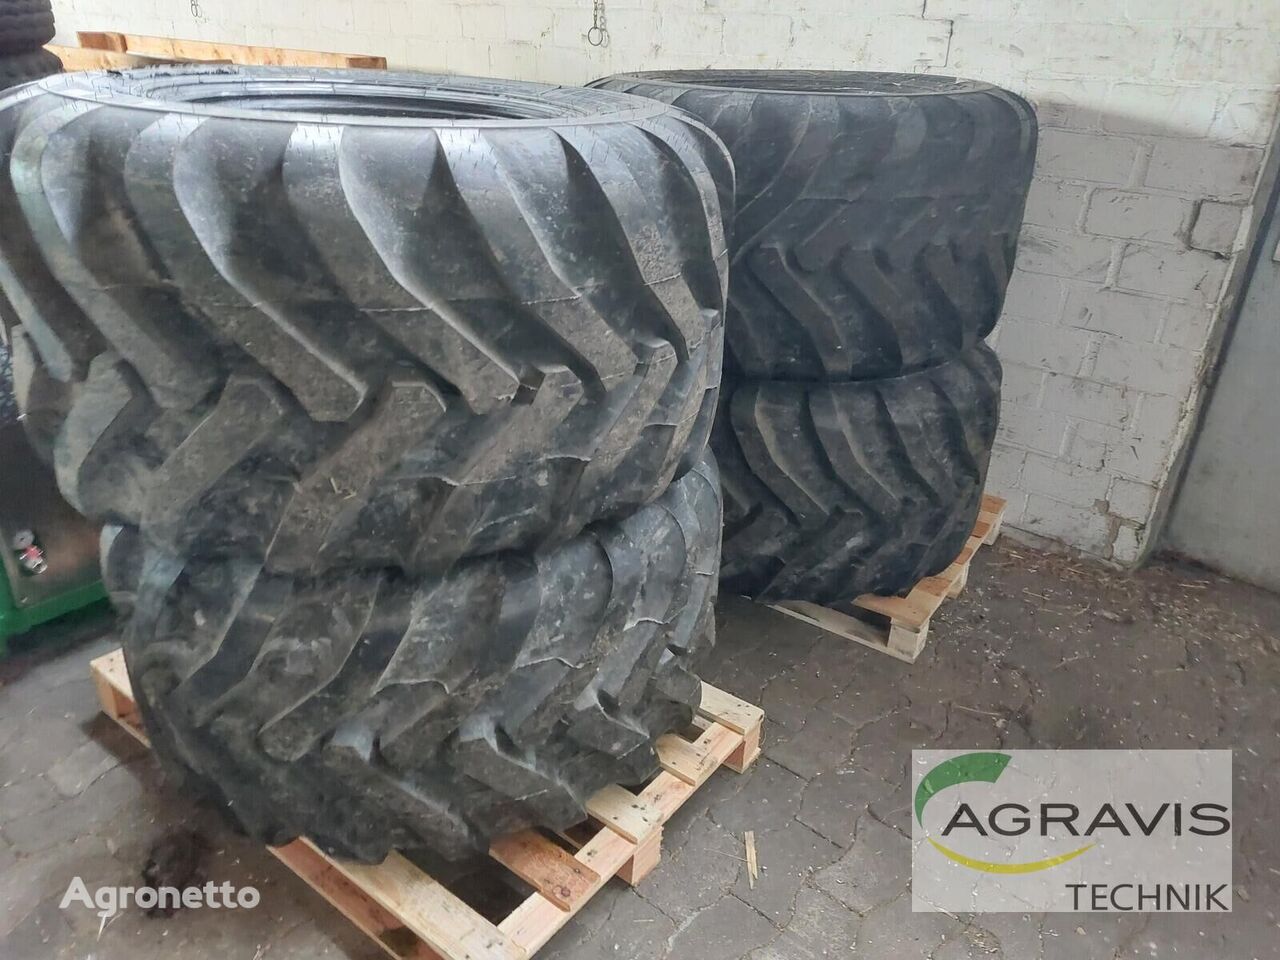 Alliance 600/50 R 22.5 neumático para tractor nuevo